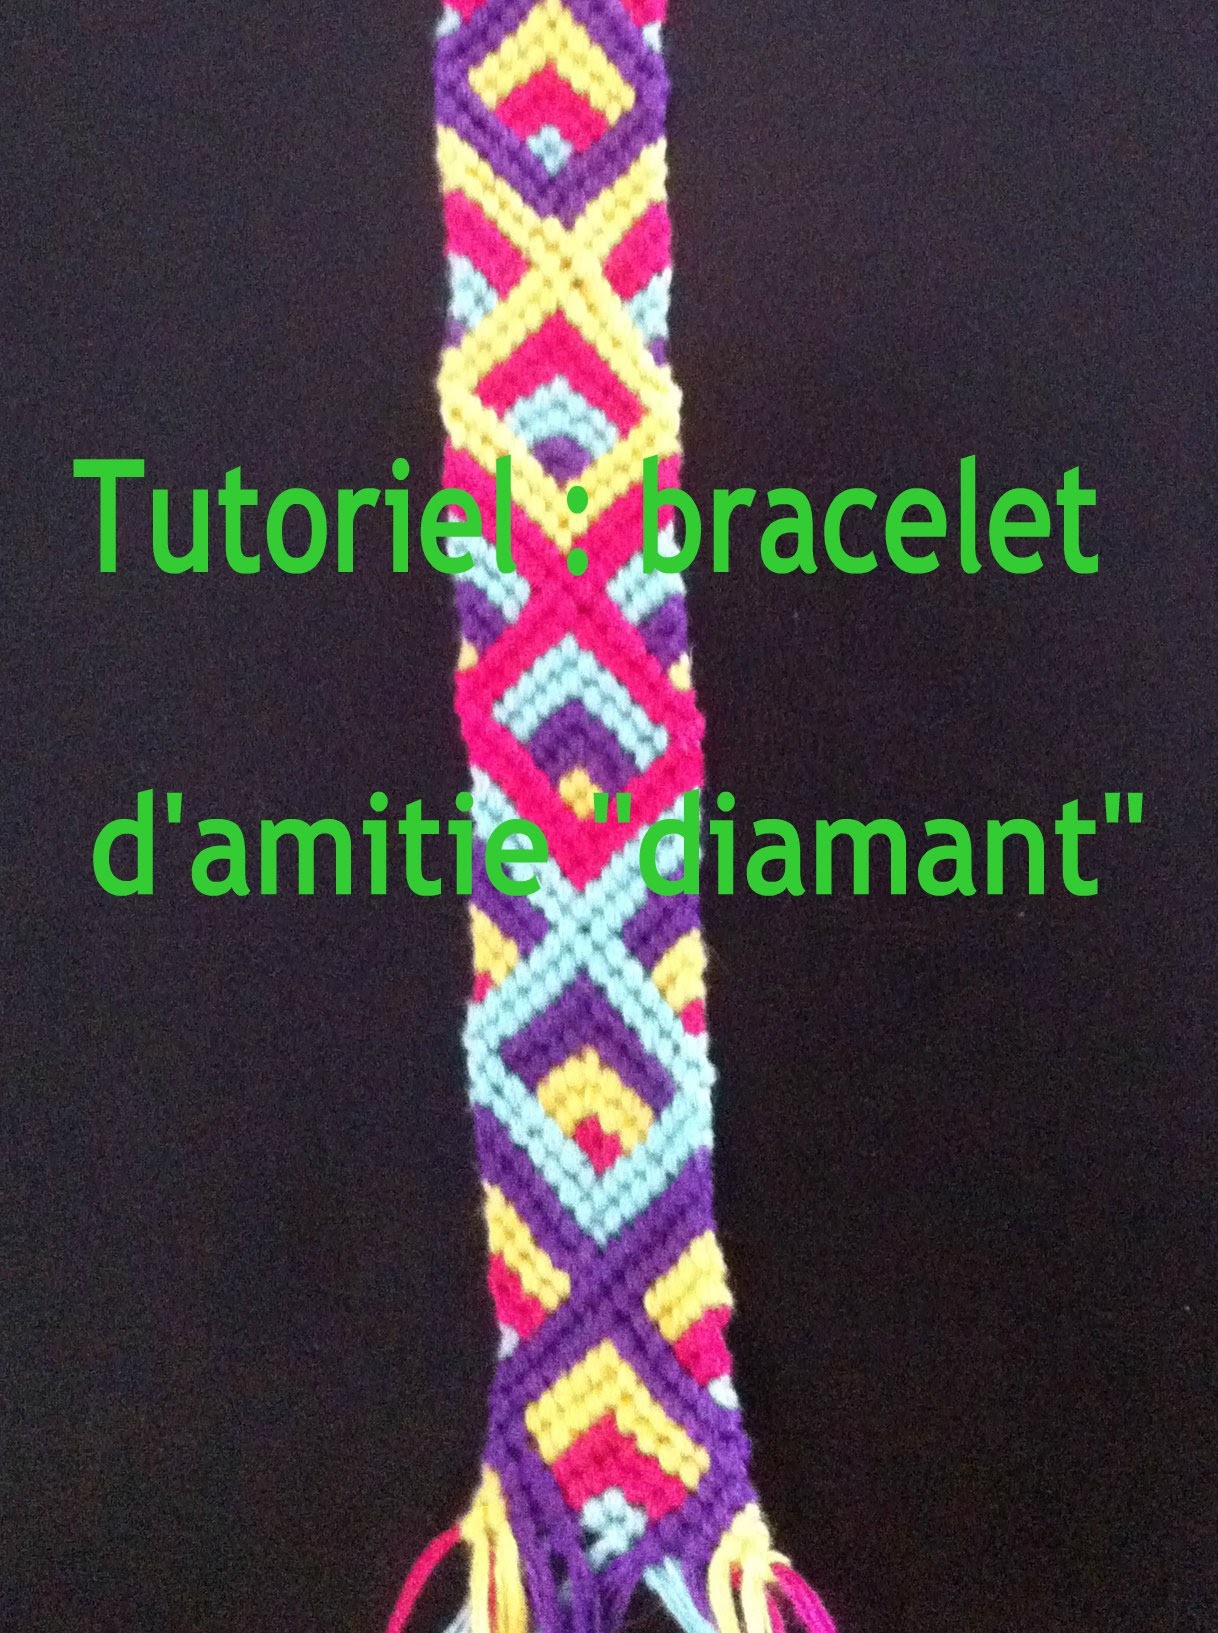 Bracelet d'amitié "Diamant" tutoriel.Diamond Friendship Bracelet tutorial